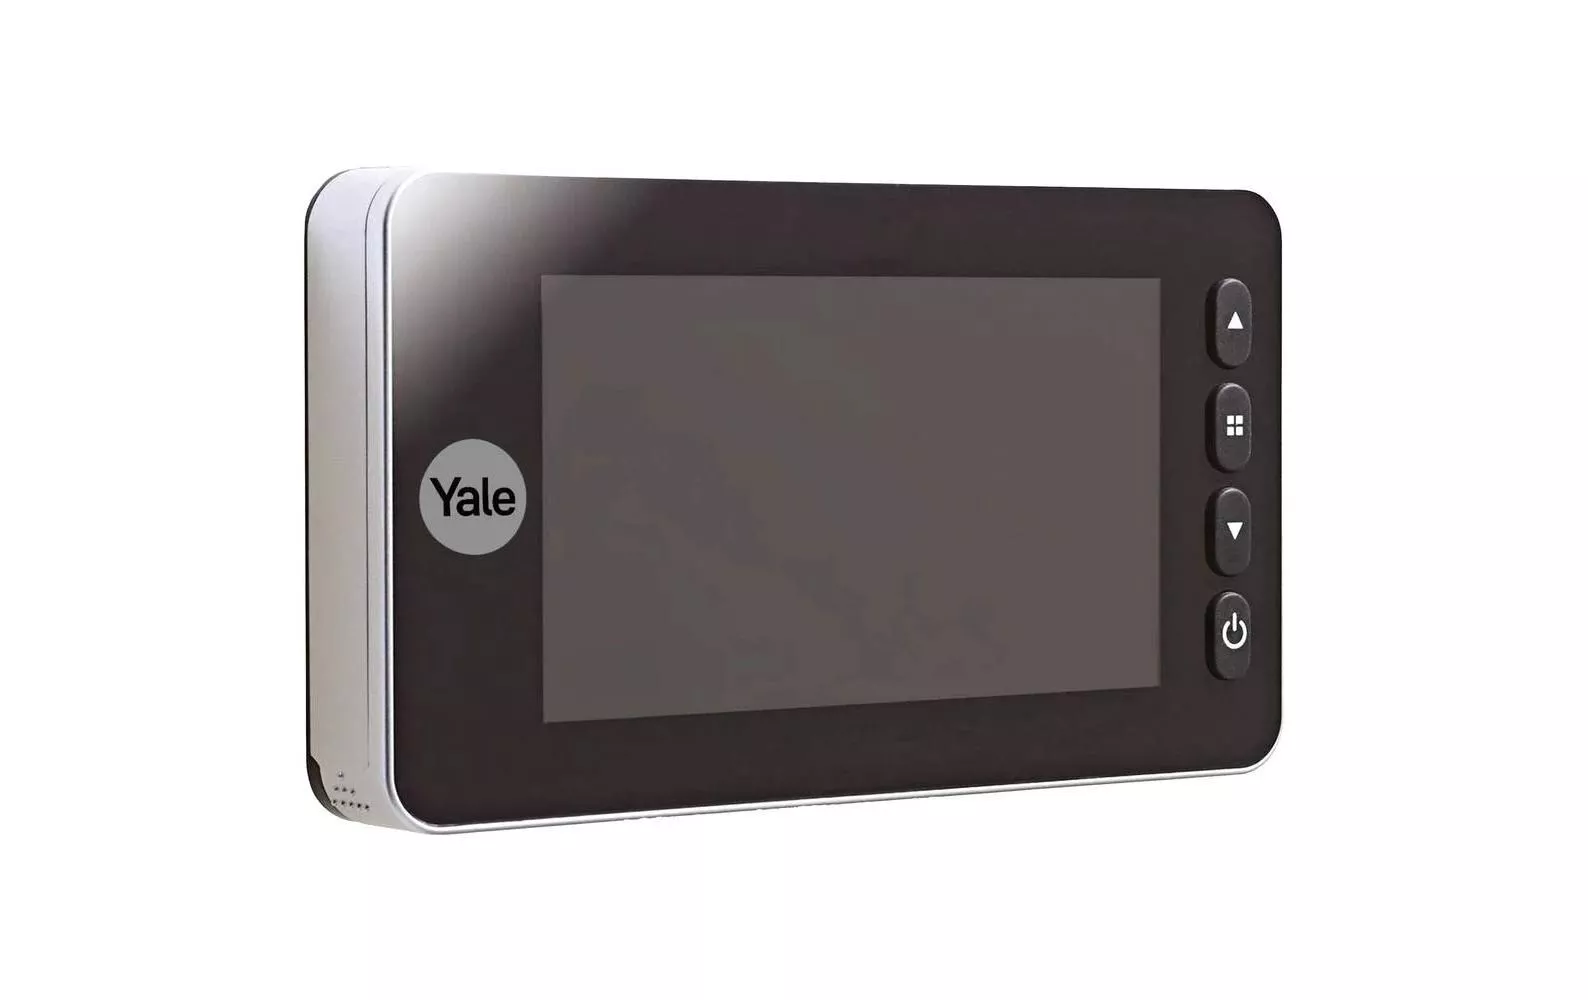 Visore digitale per porte Yale DDV 5800 con display da 4,3\", argento